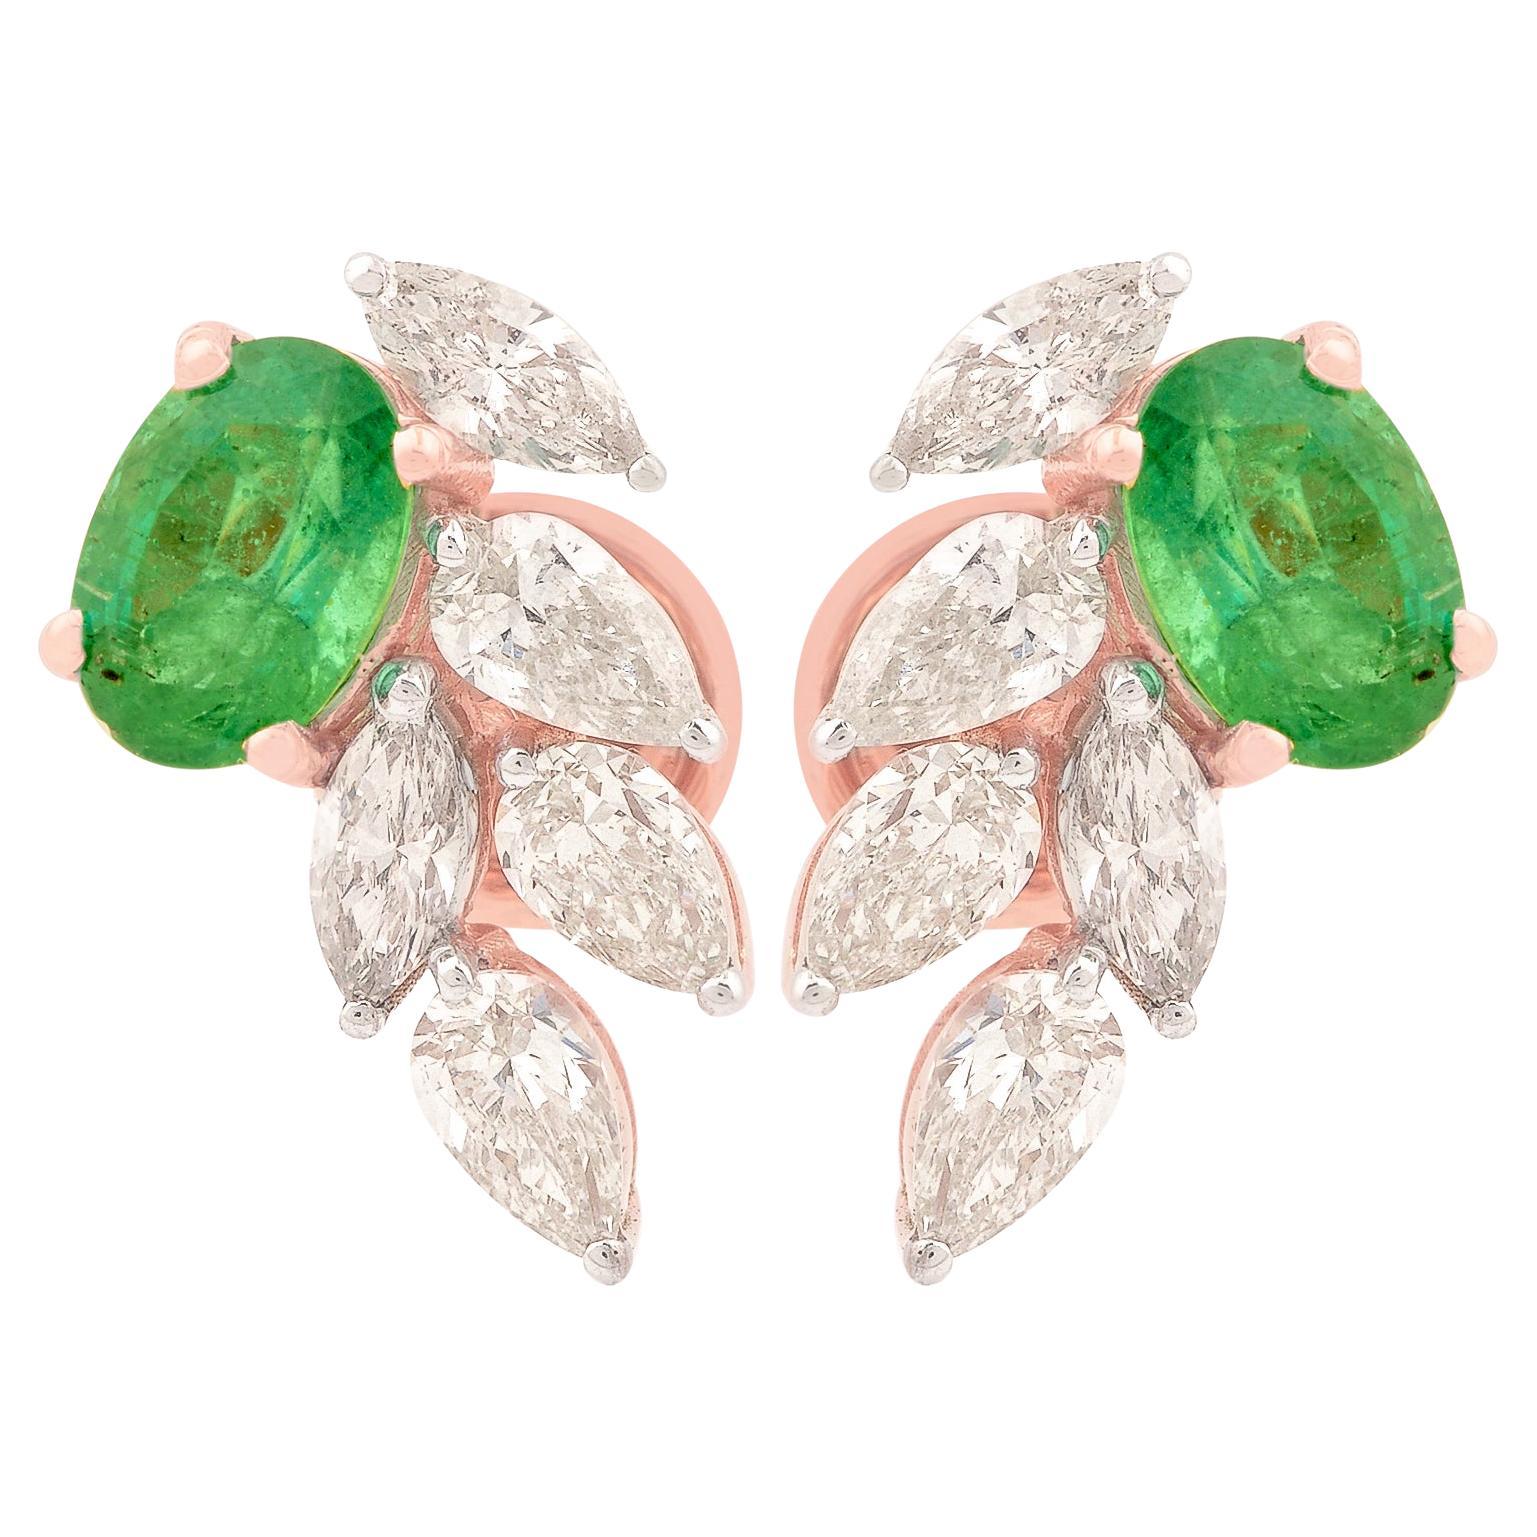 Oval Zambian Emerald Gemstone Stud Earrings Diamond 18 Karat Rose Gold Jewelry